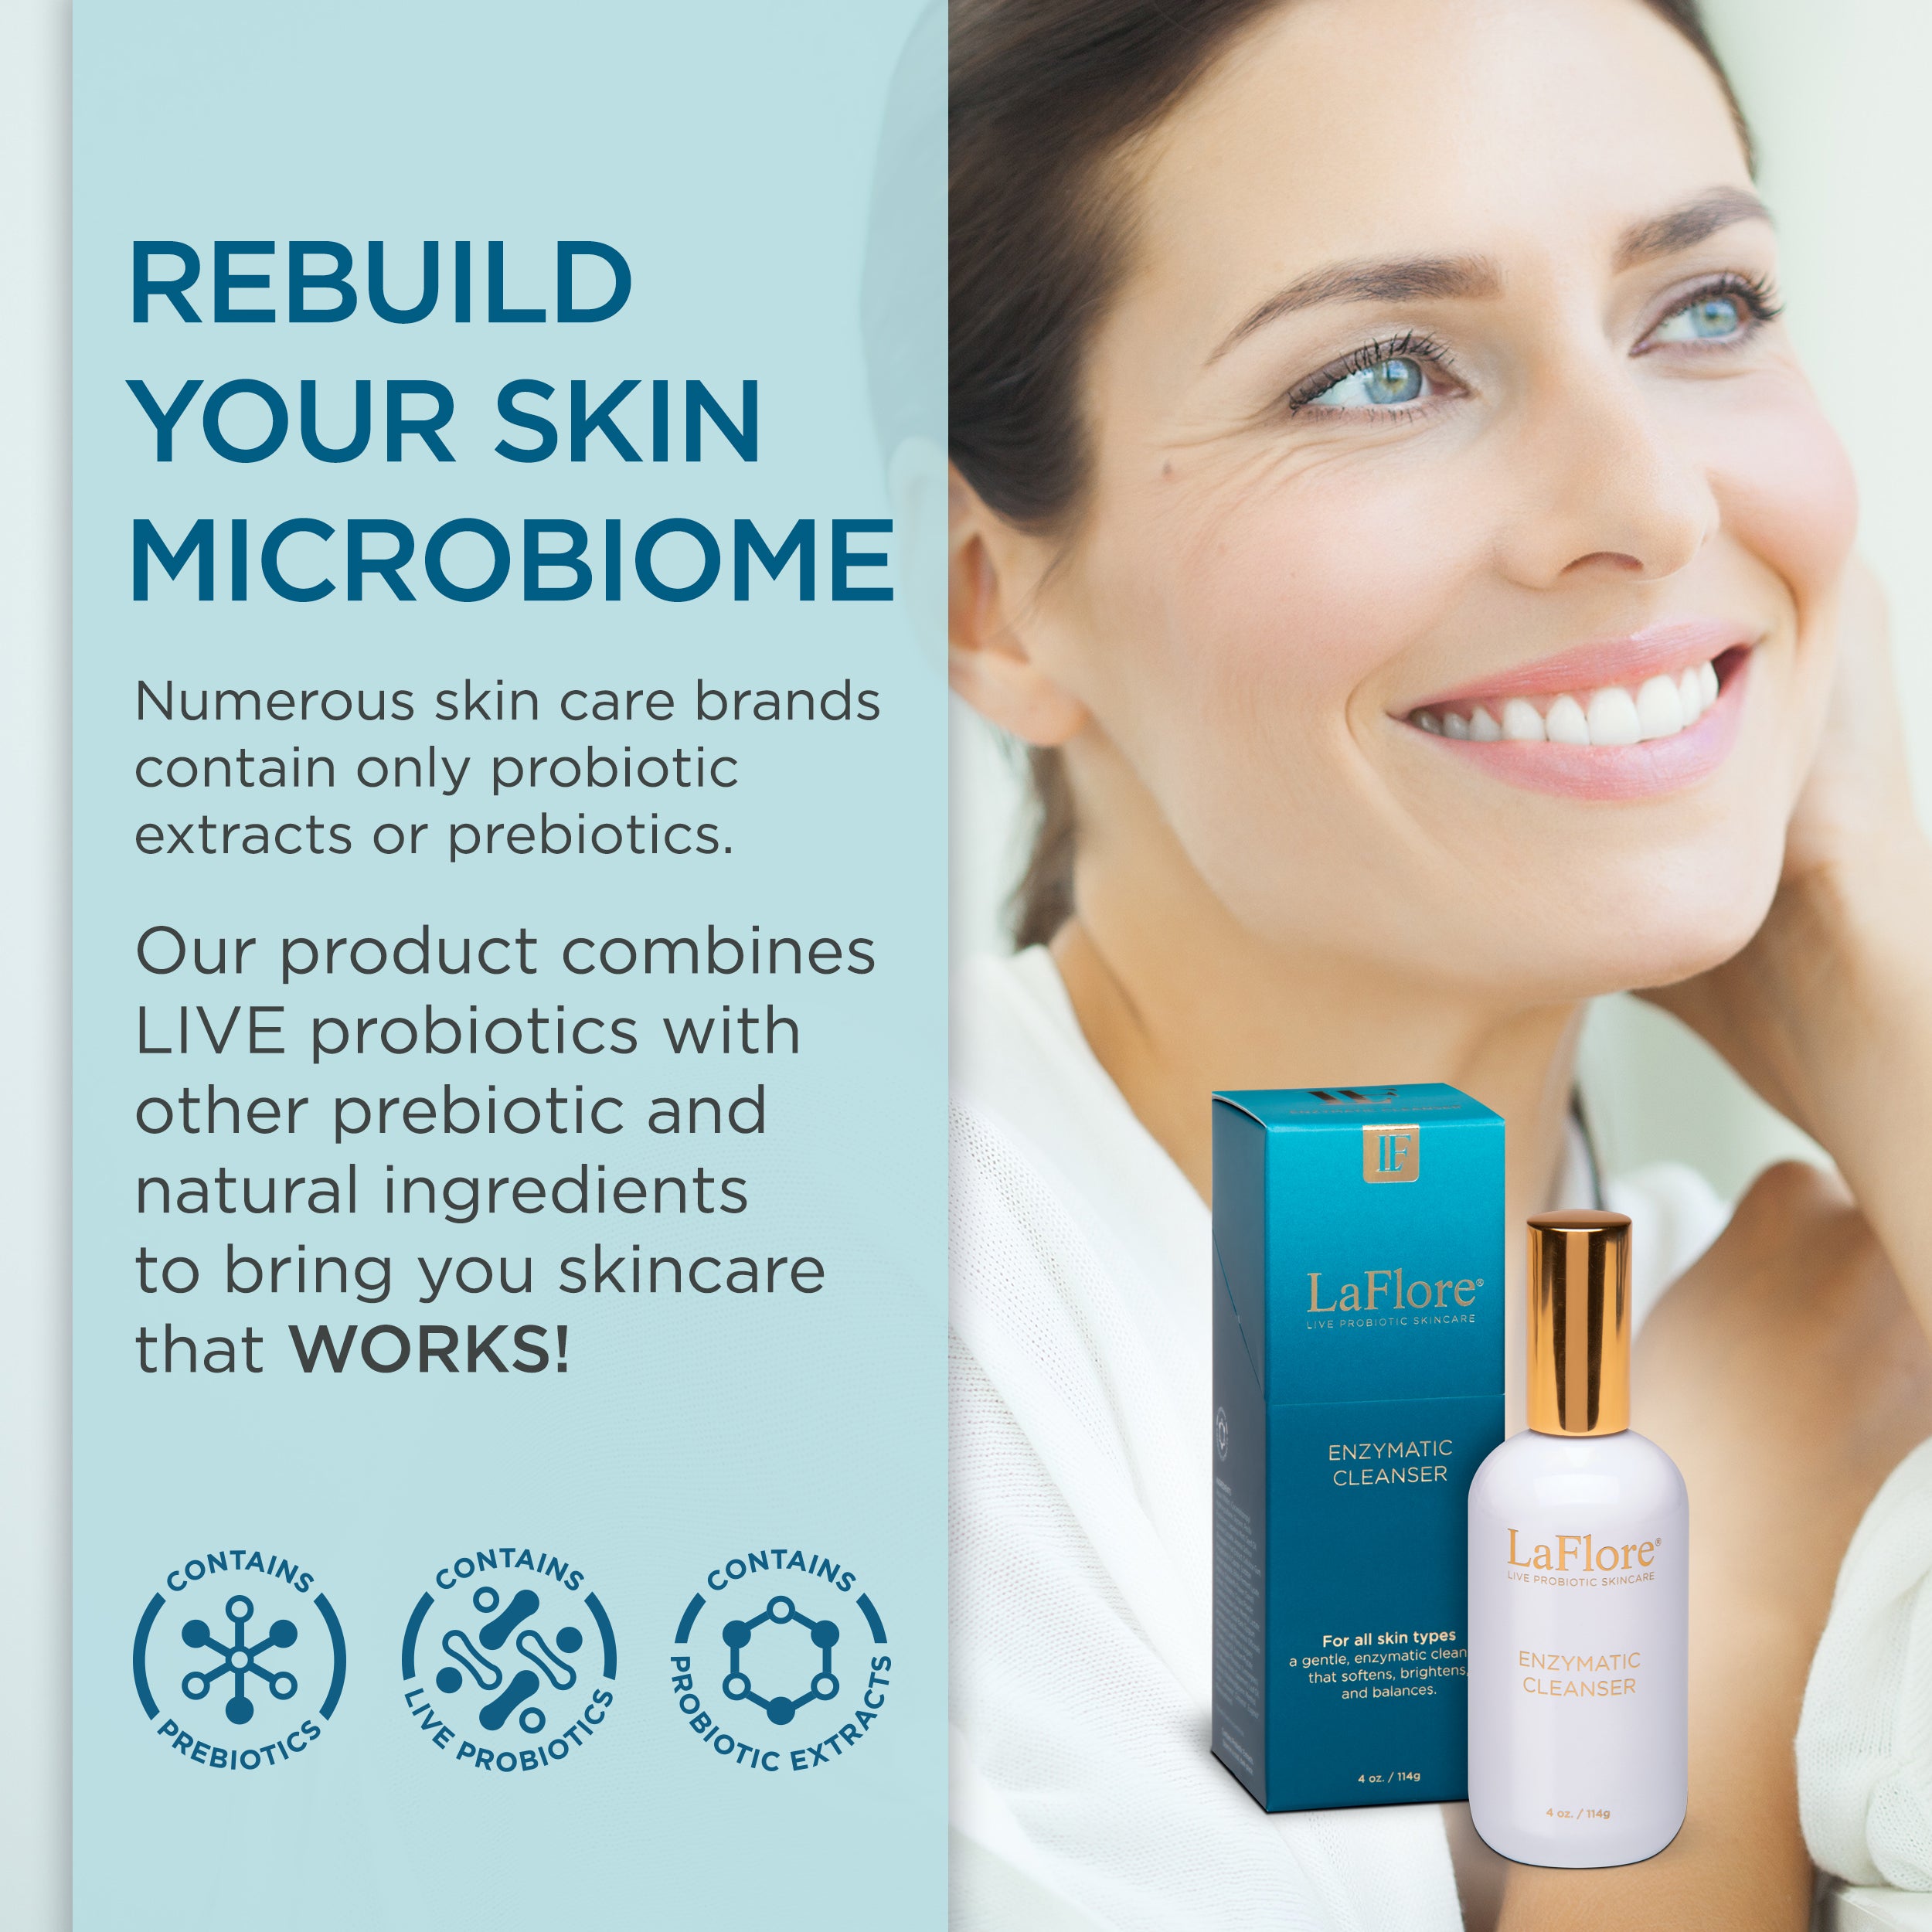 LaFlore Enzymatic Cleanser - Live Probiotic Skincare